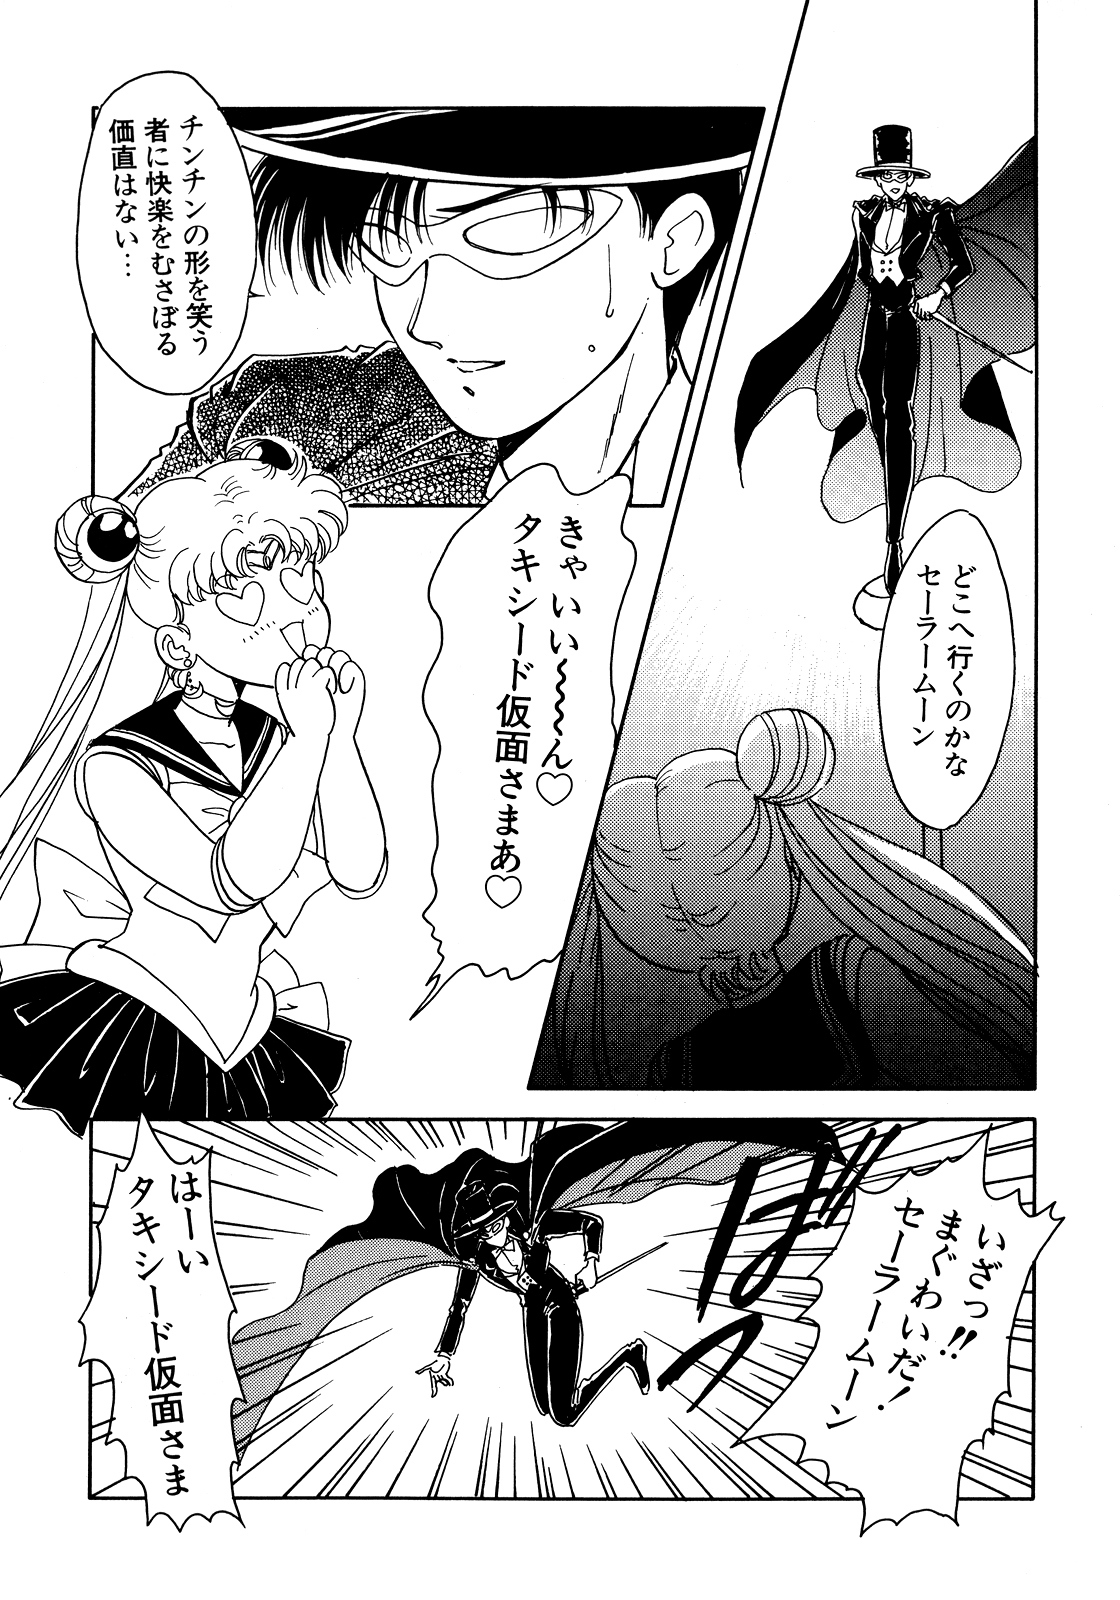 [Anthology] Lunatic Party 5 (Bishoujo Senshi Sailor Moon) page 30 full